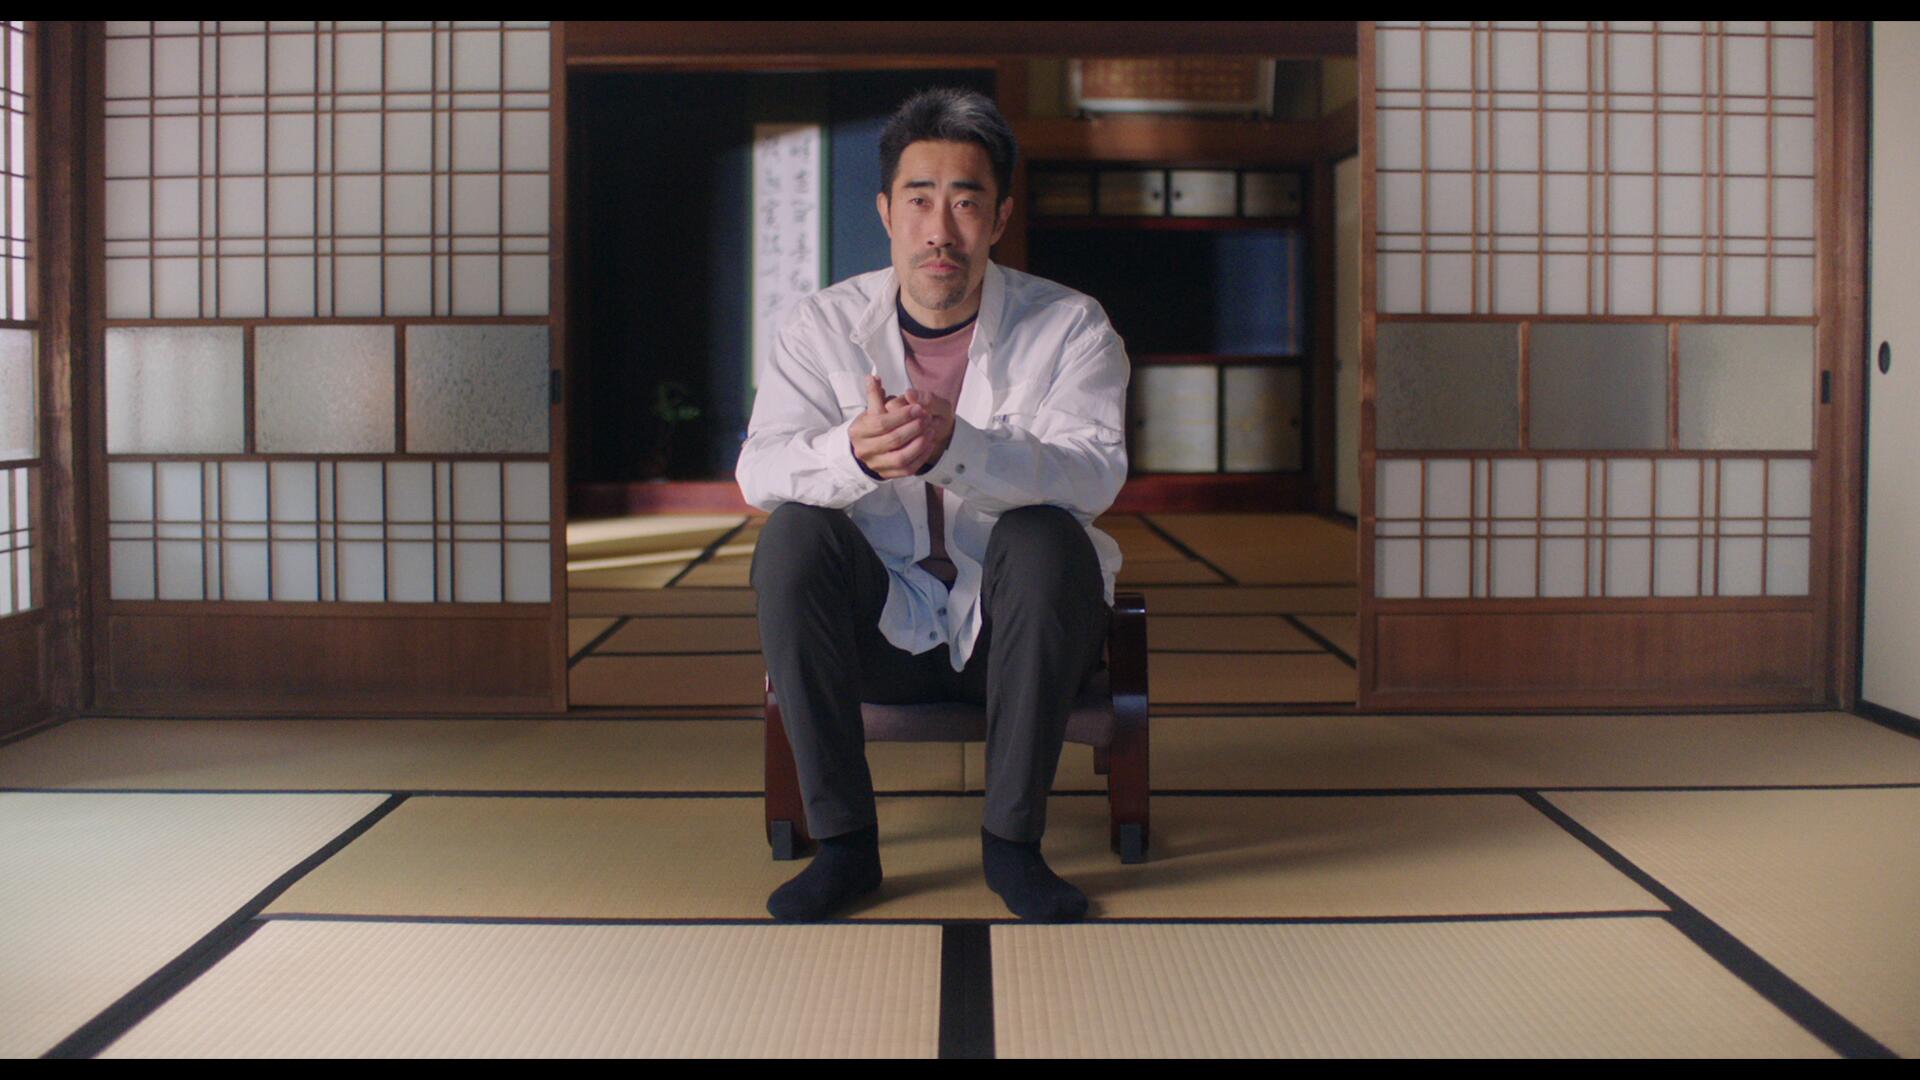 Ngôi sao thực tế Nhật Bản Nasubi nhớ lại câu chuyện “chấn thương” thật sau phim tài liệu của Hulu The Contestant